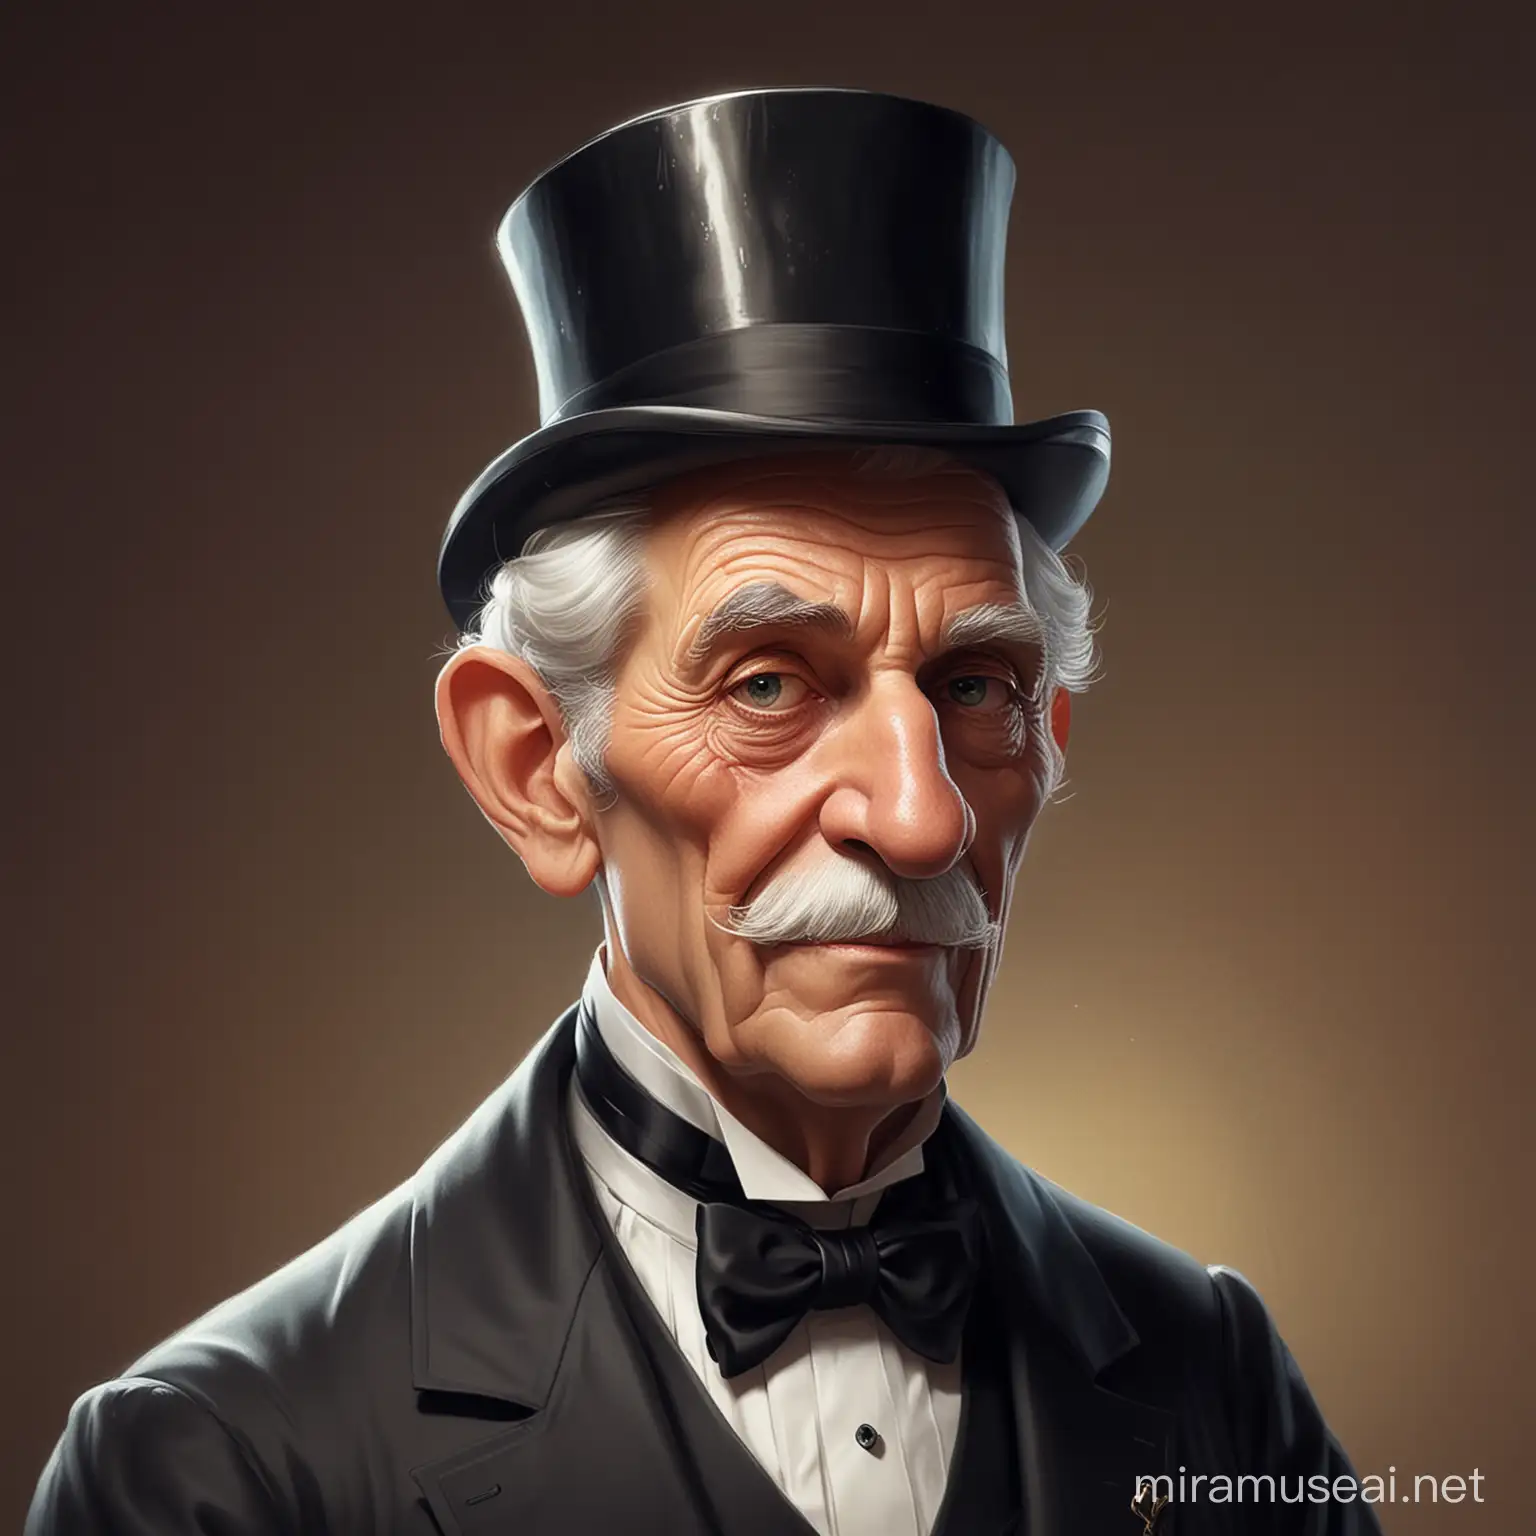 Elegant Cartoon Portrait of a Distinguished Butler